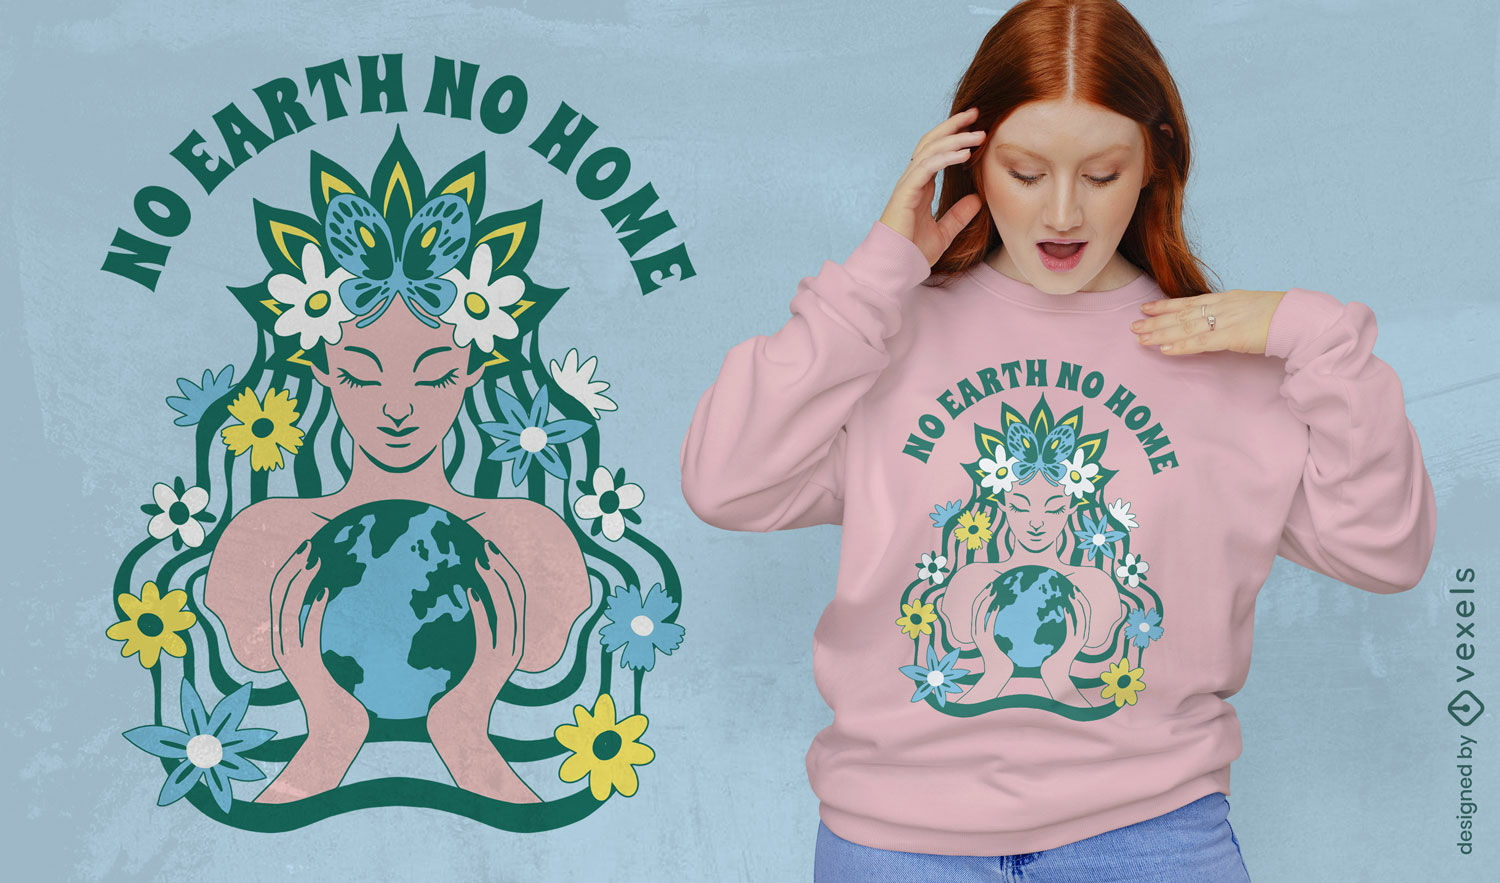 Keine Erde, kein Zuhause Earth Day T-Shirt-Design